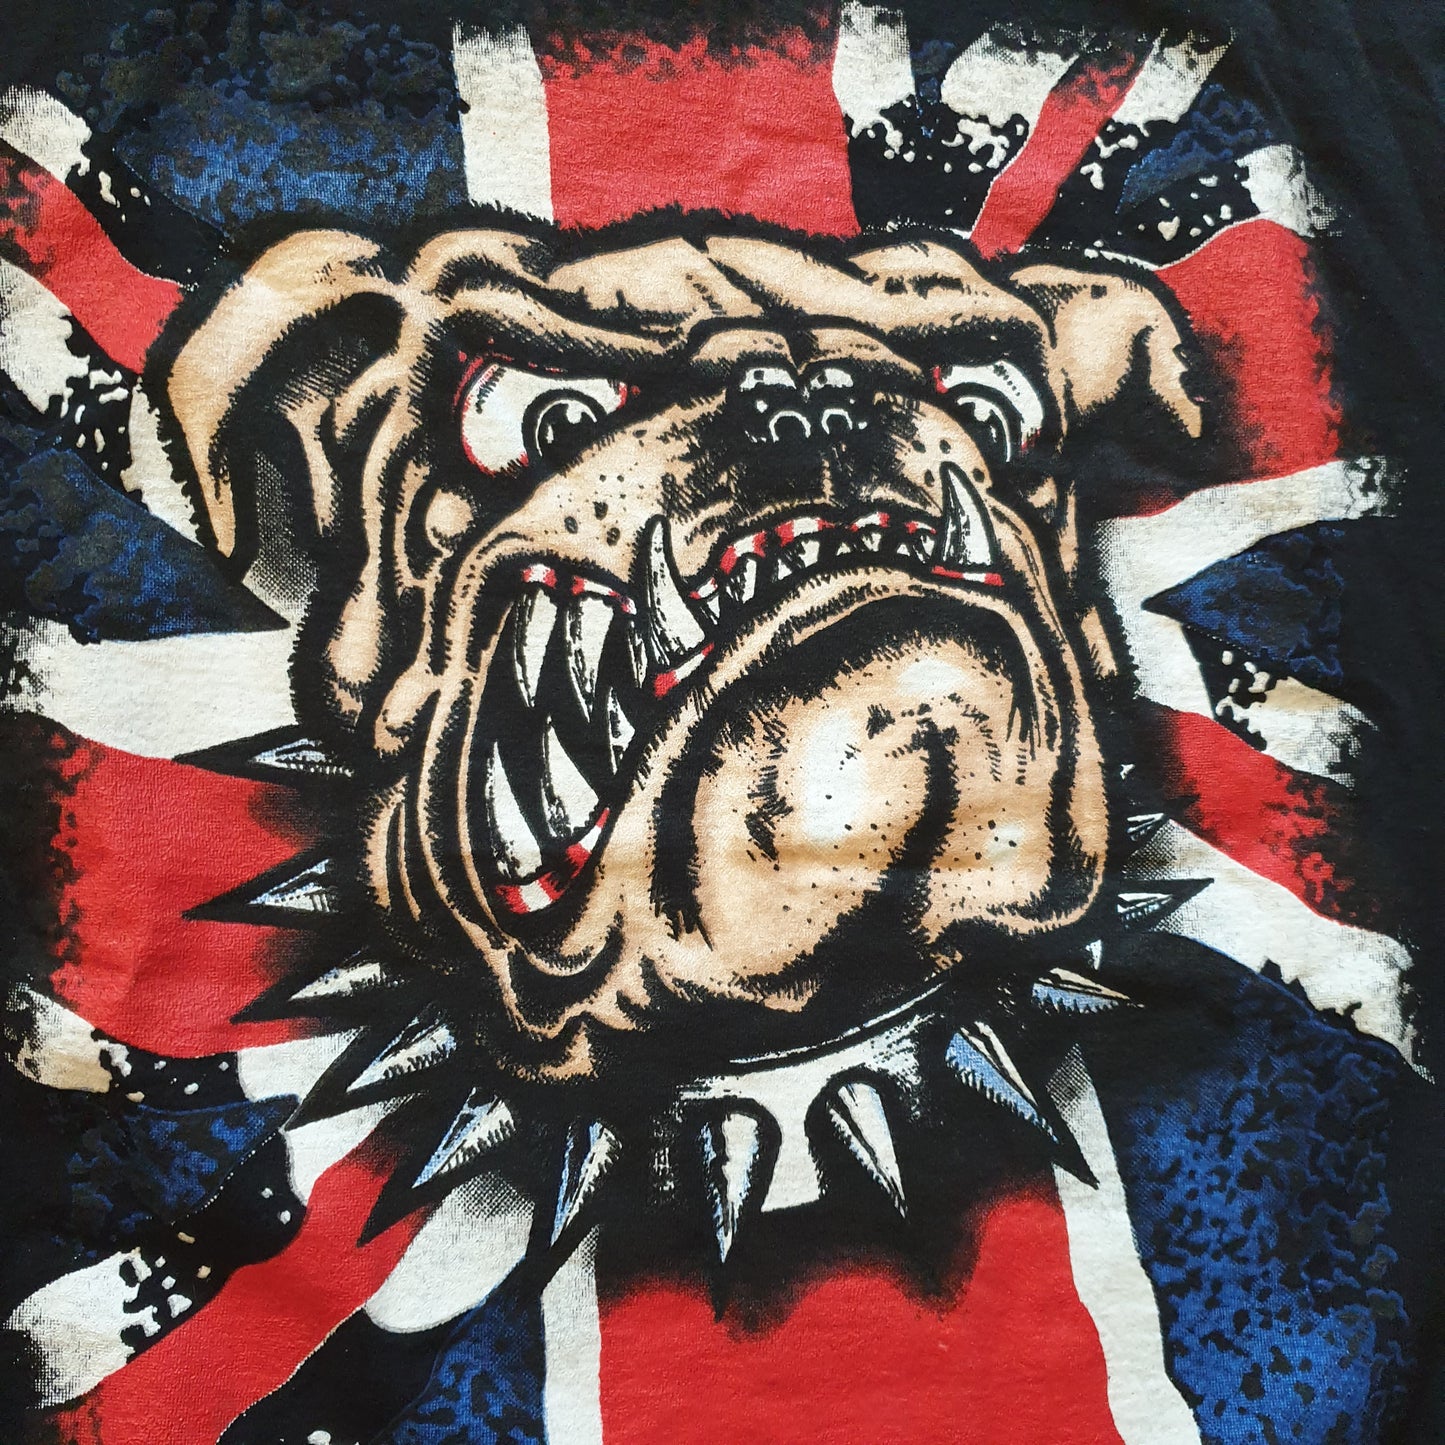 British Dog T-Shirt S-M